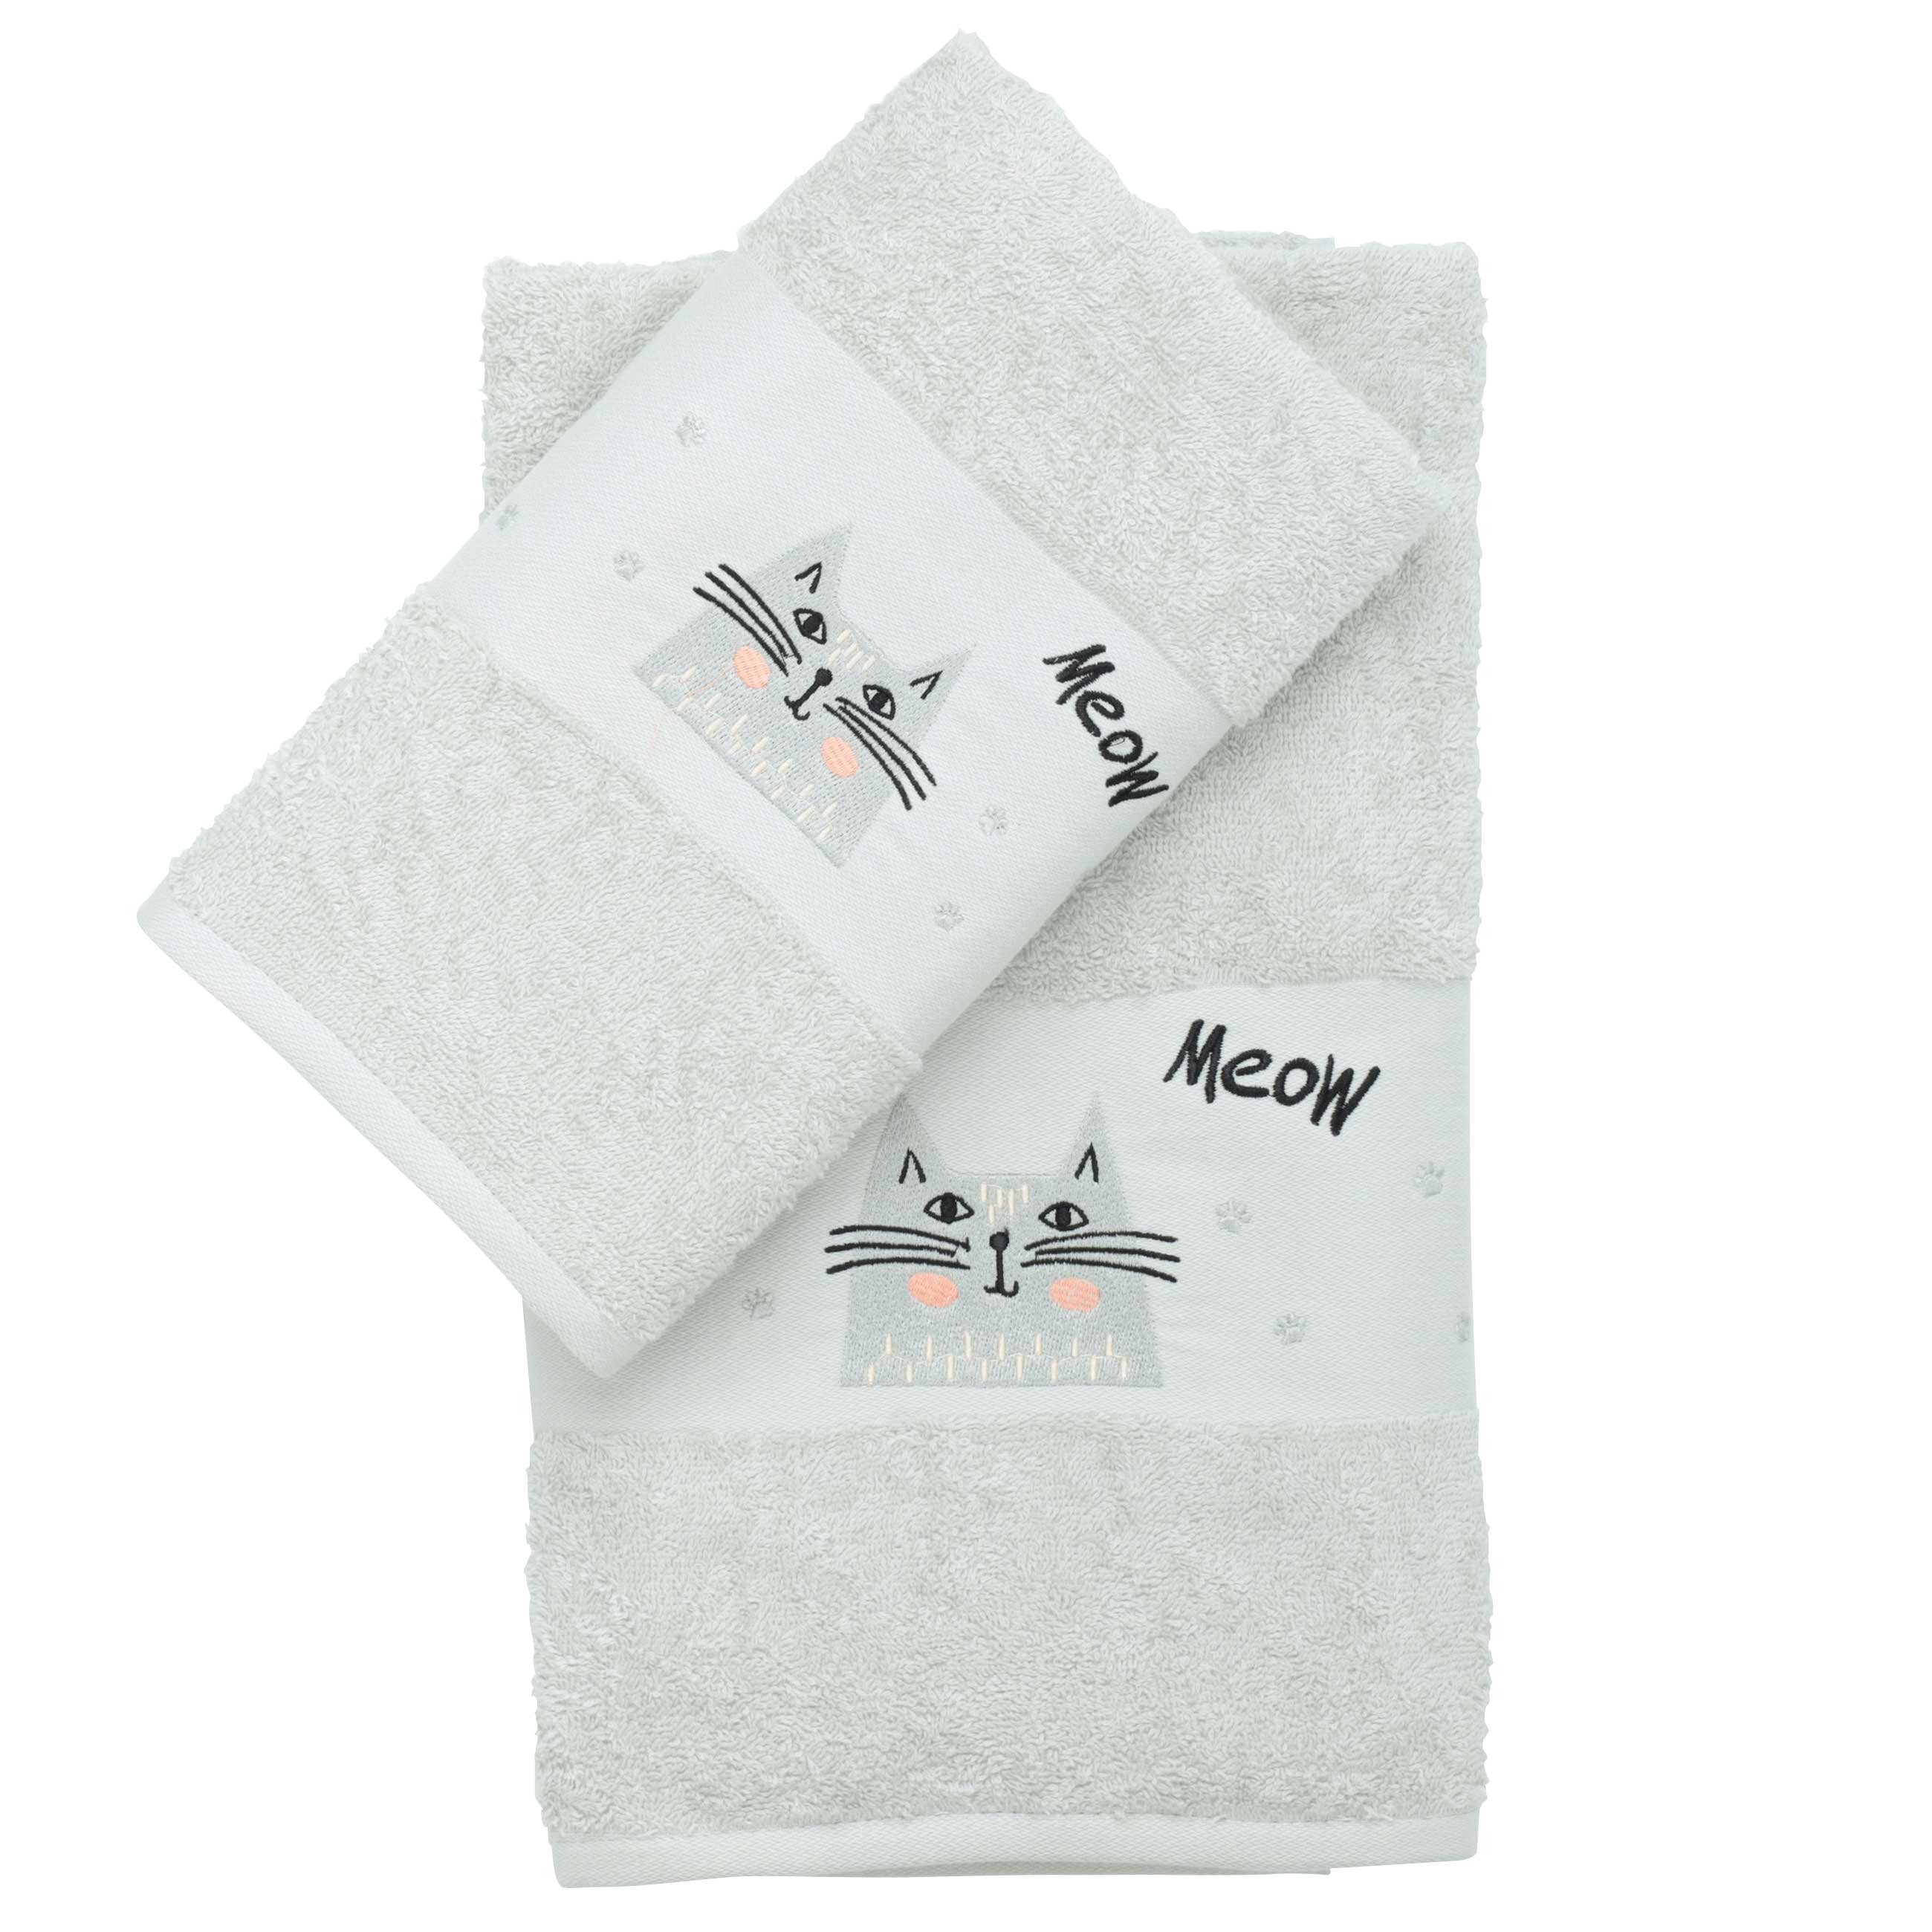 Baby towel, 70x120 cm, cotton, light grey, Cat, Grey cat изображение № 4